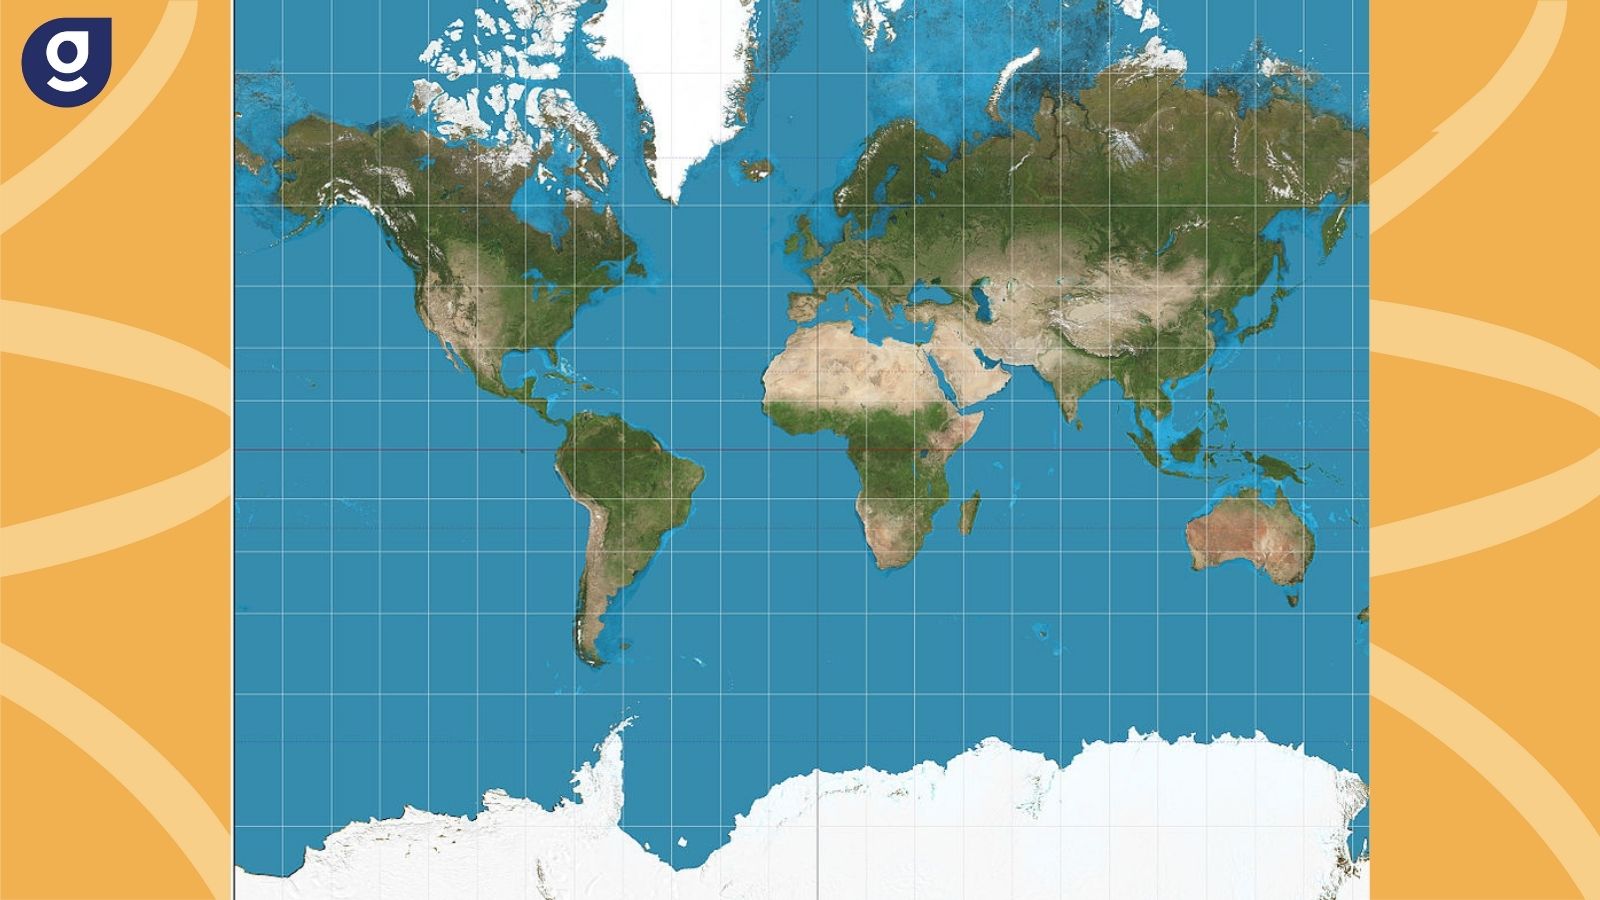 Após 4 séculos, Projeção de Mercator ainda gera polêmica arte e cartografia